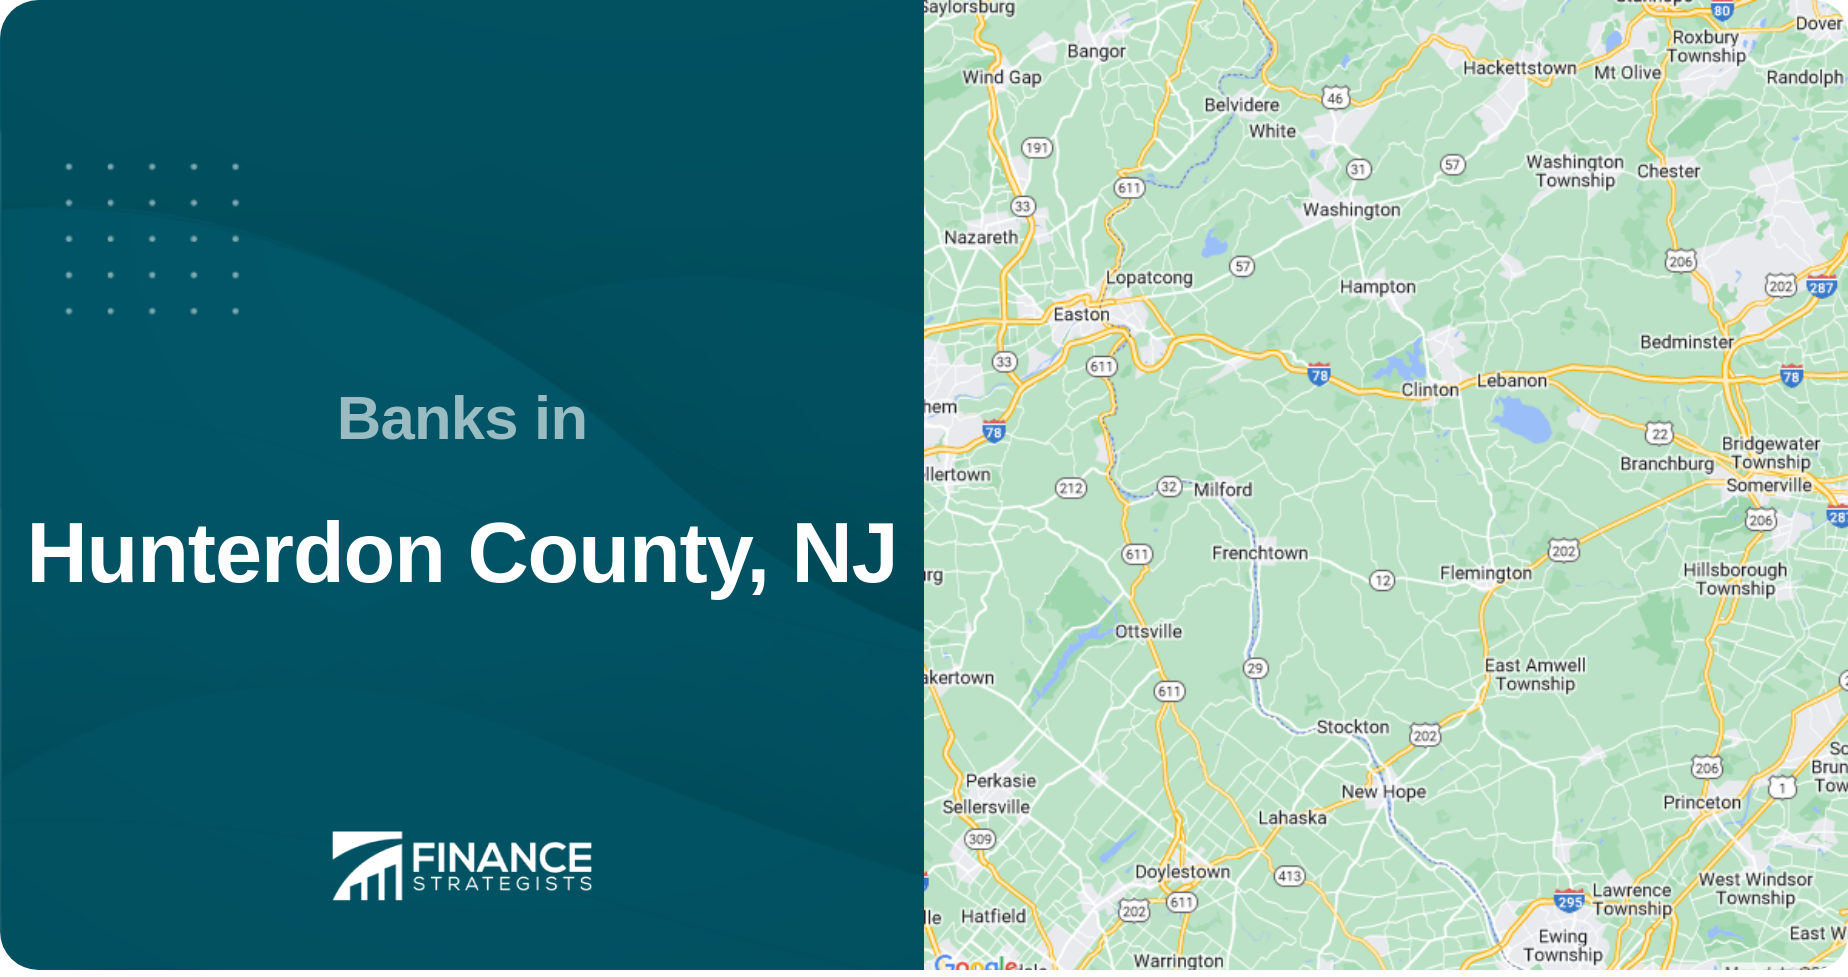 Banks in Hunterdon County, NJ